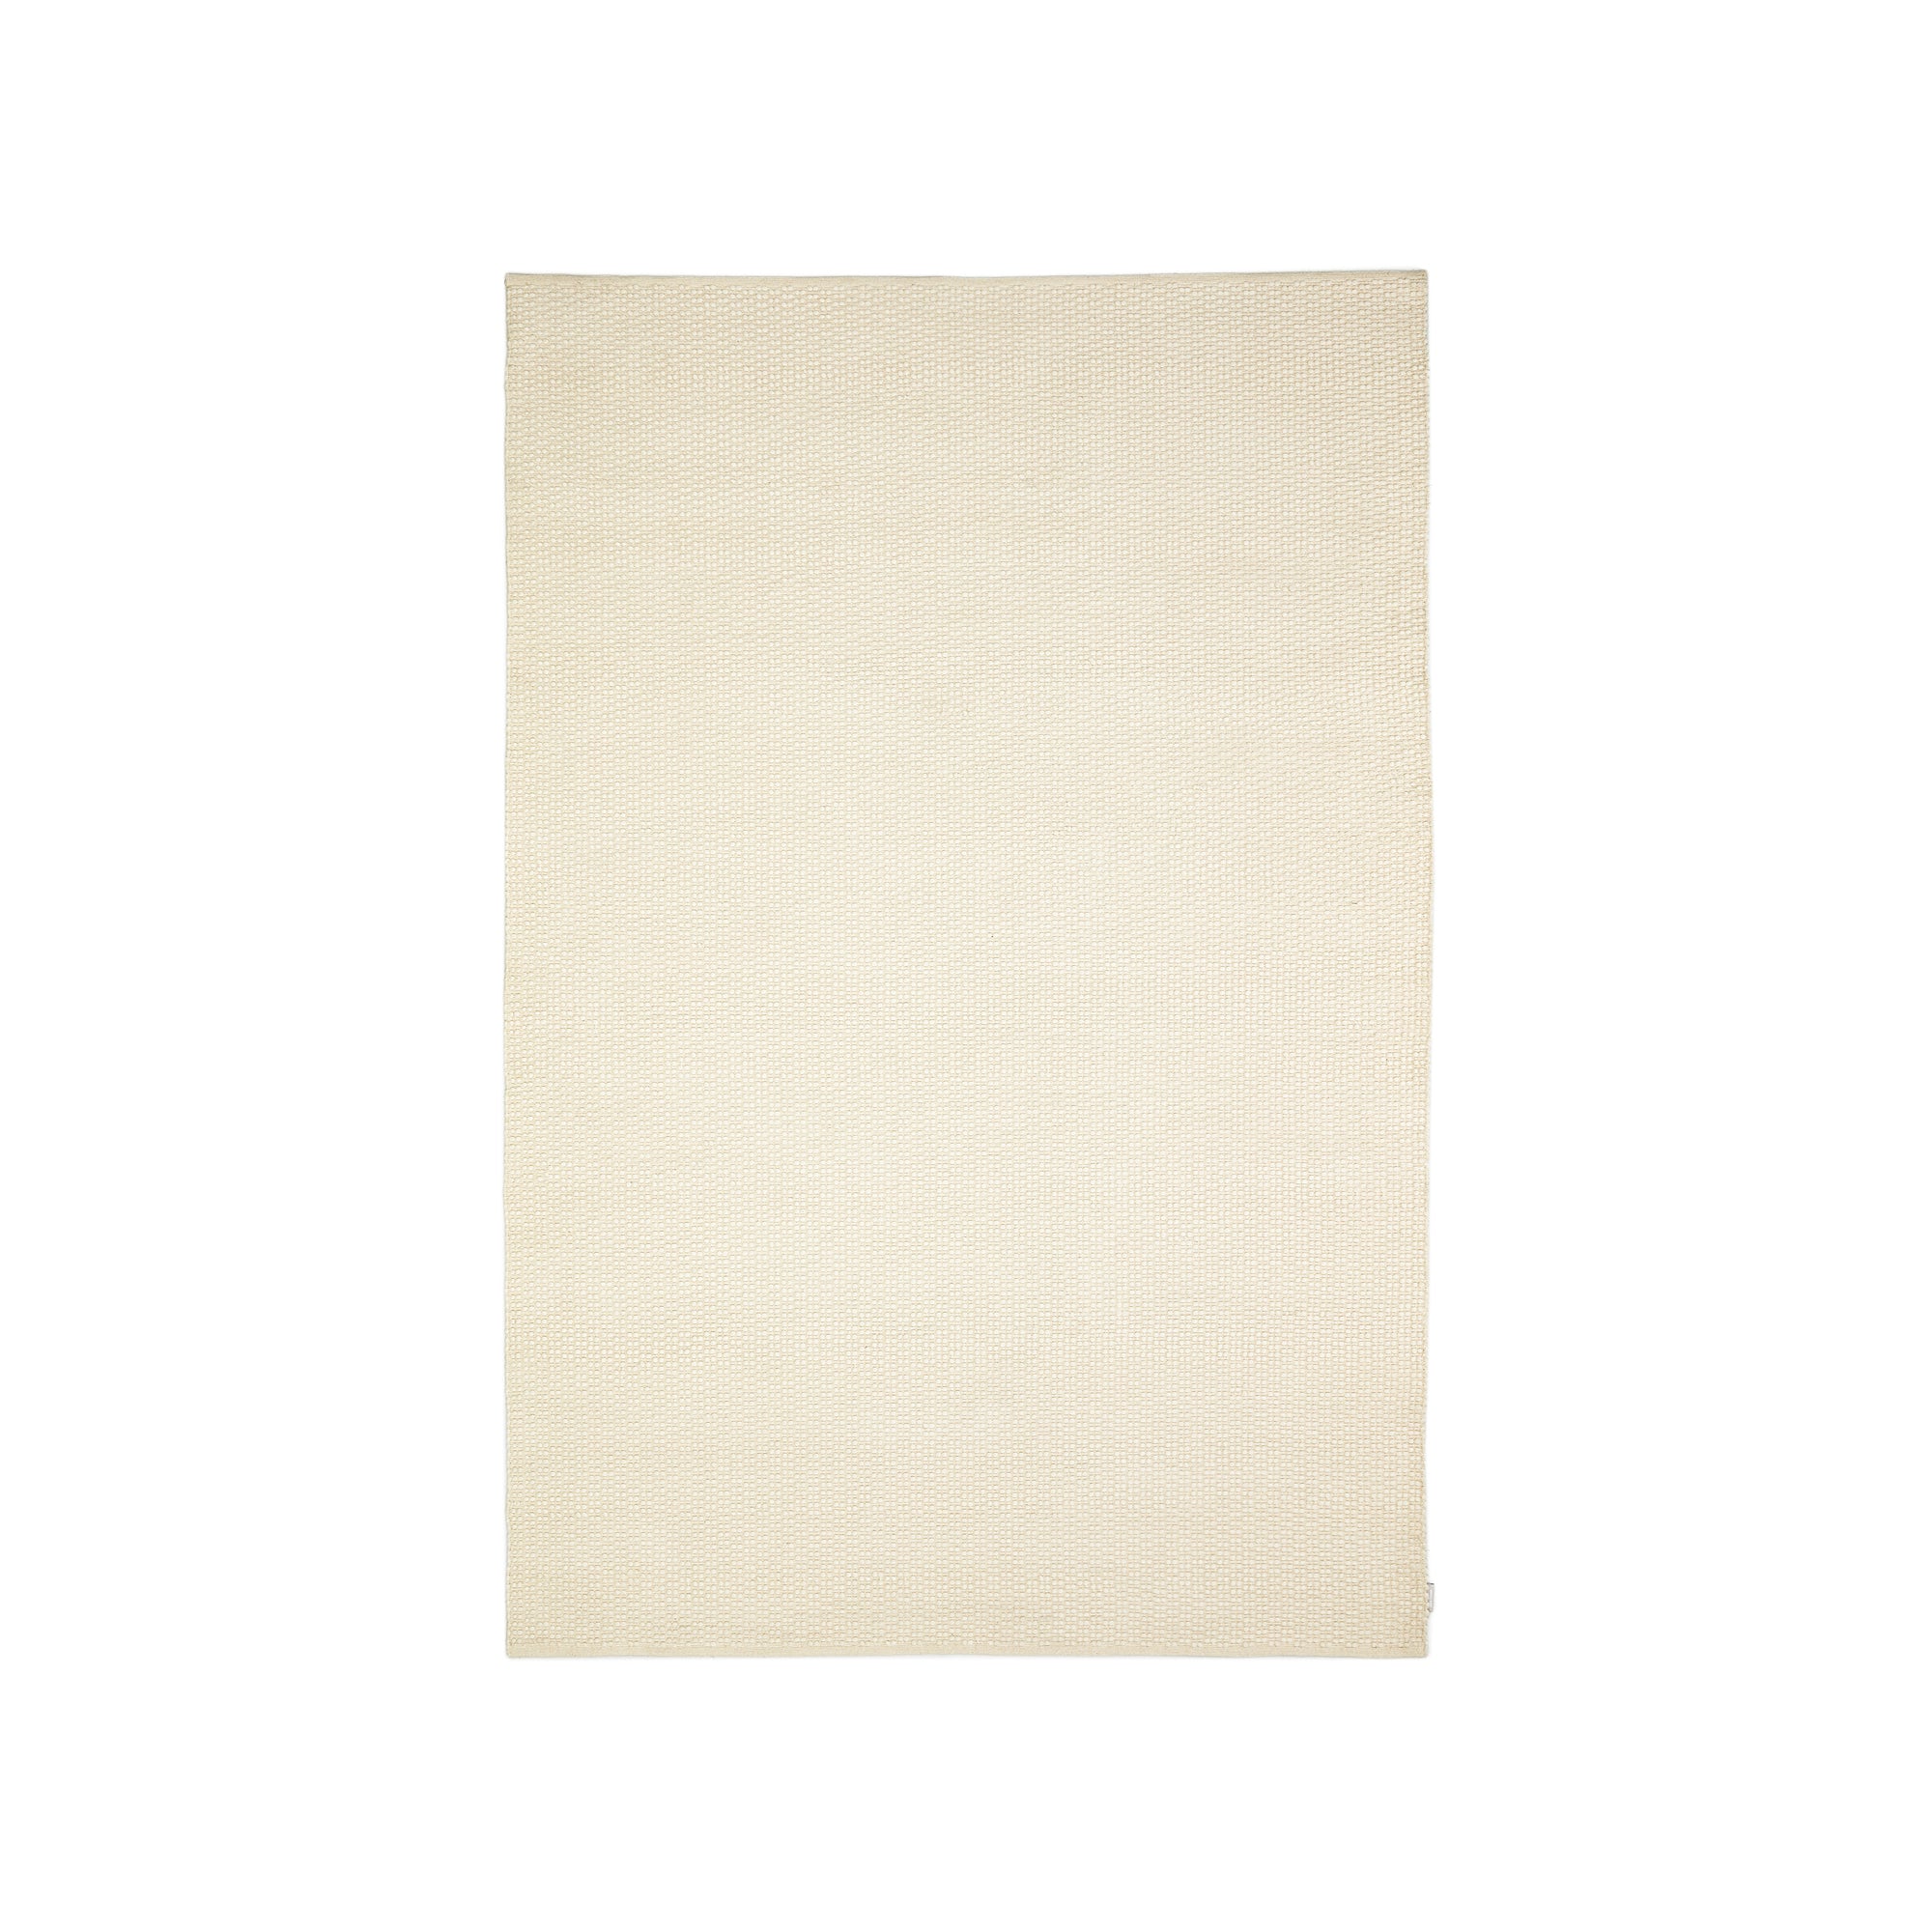 Mascarell szőnyeg, pamut és polipropilén, fehér színben, 200 x 300 cm